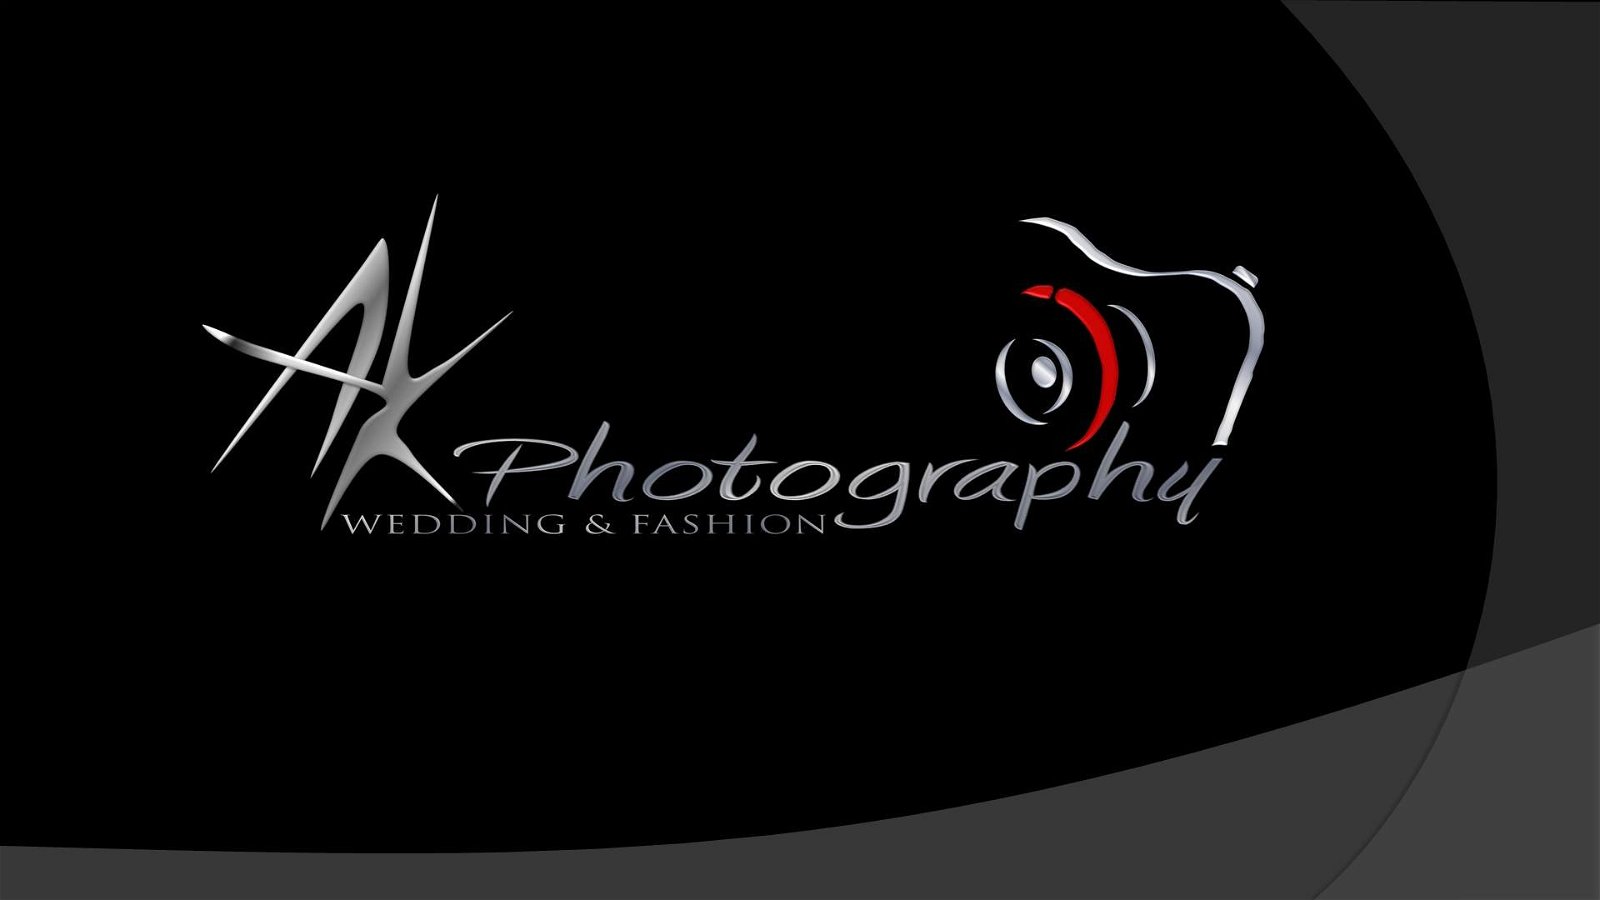 AK Photography Ã¢â‚¬â€œ Akash Profile Pic